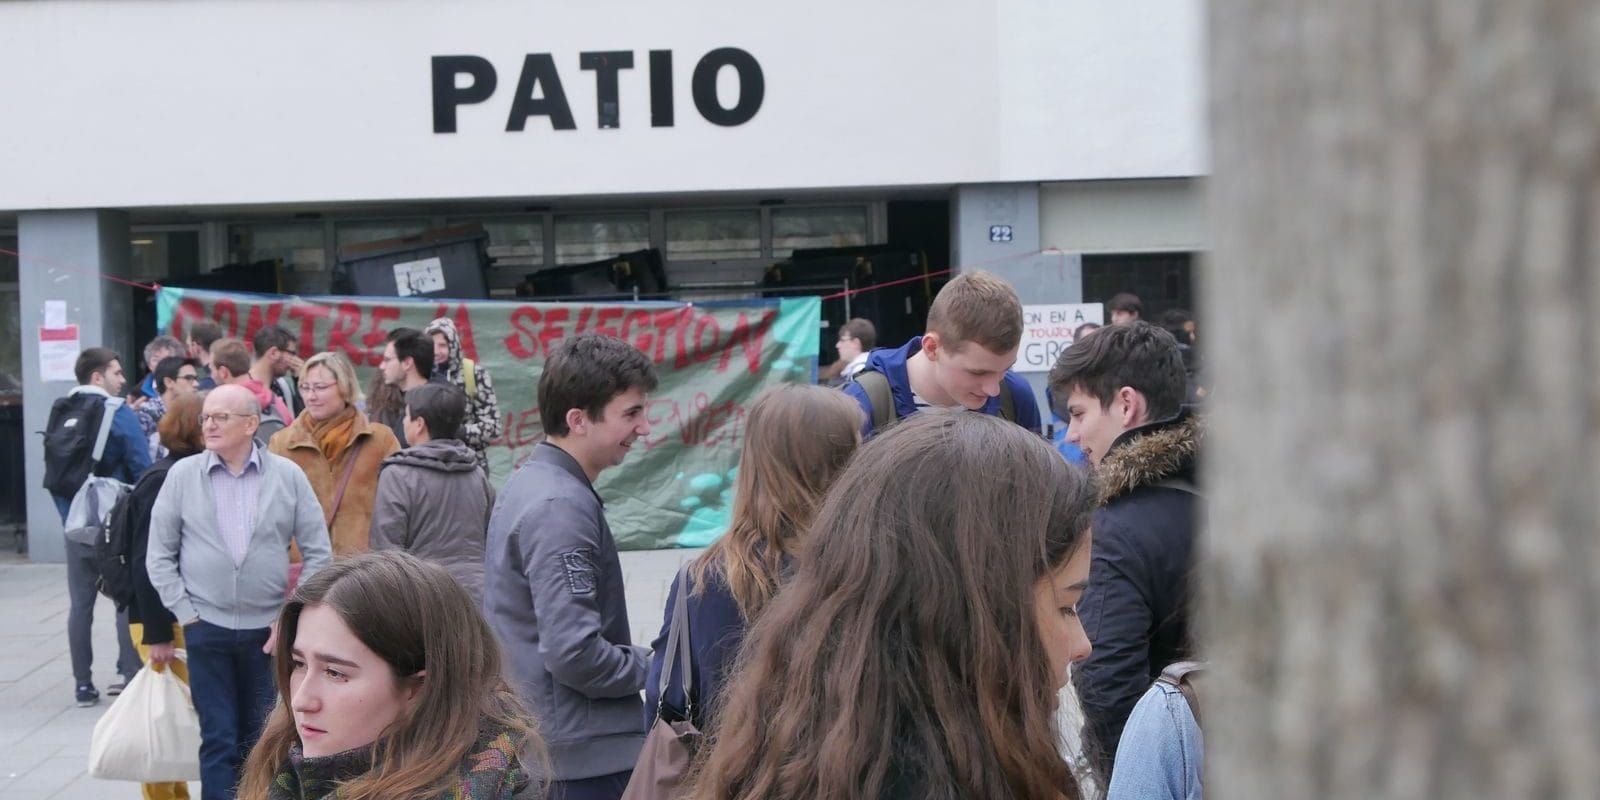 Le Patio bloqué par les étudiants en lutte de l’université de Strasbourg